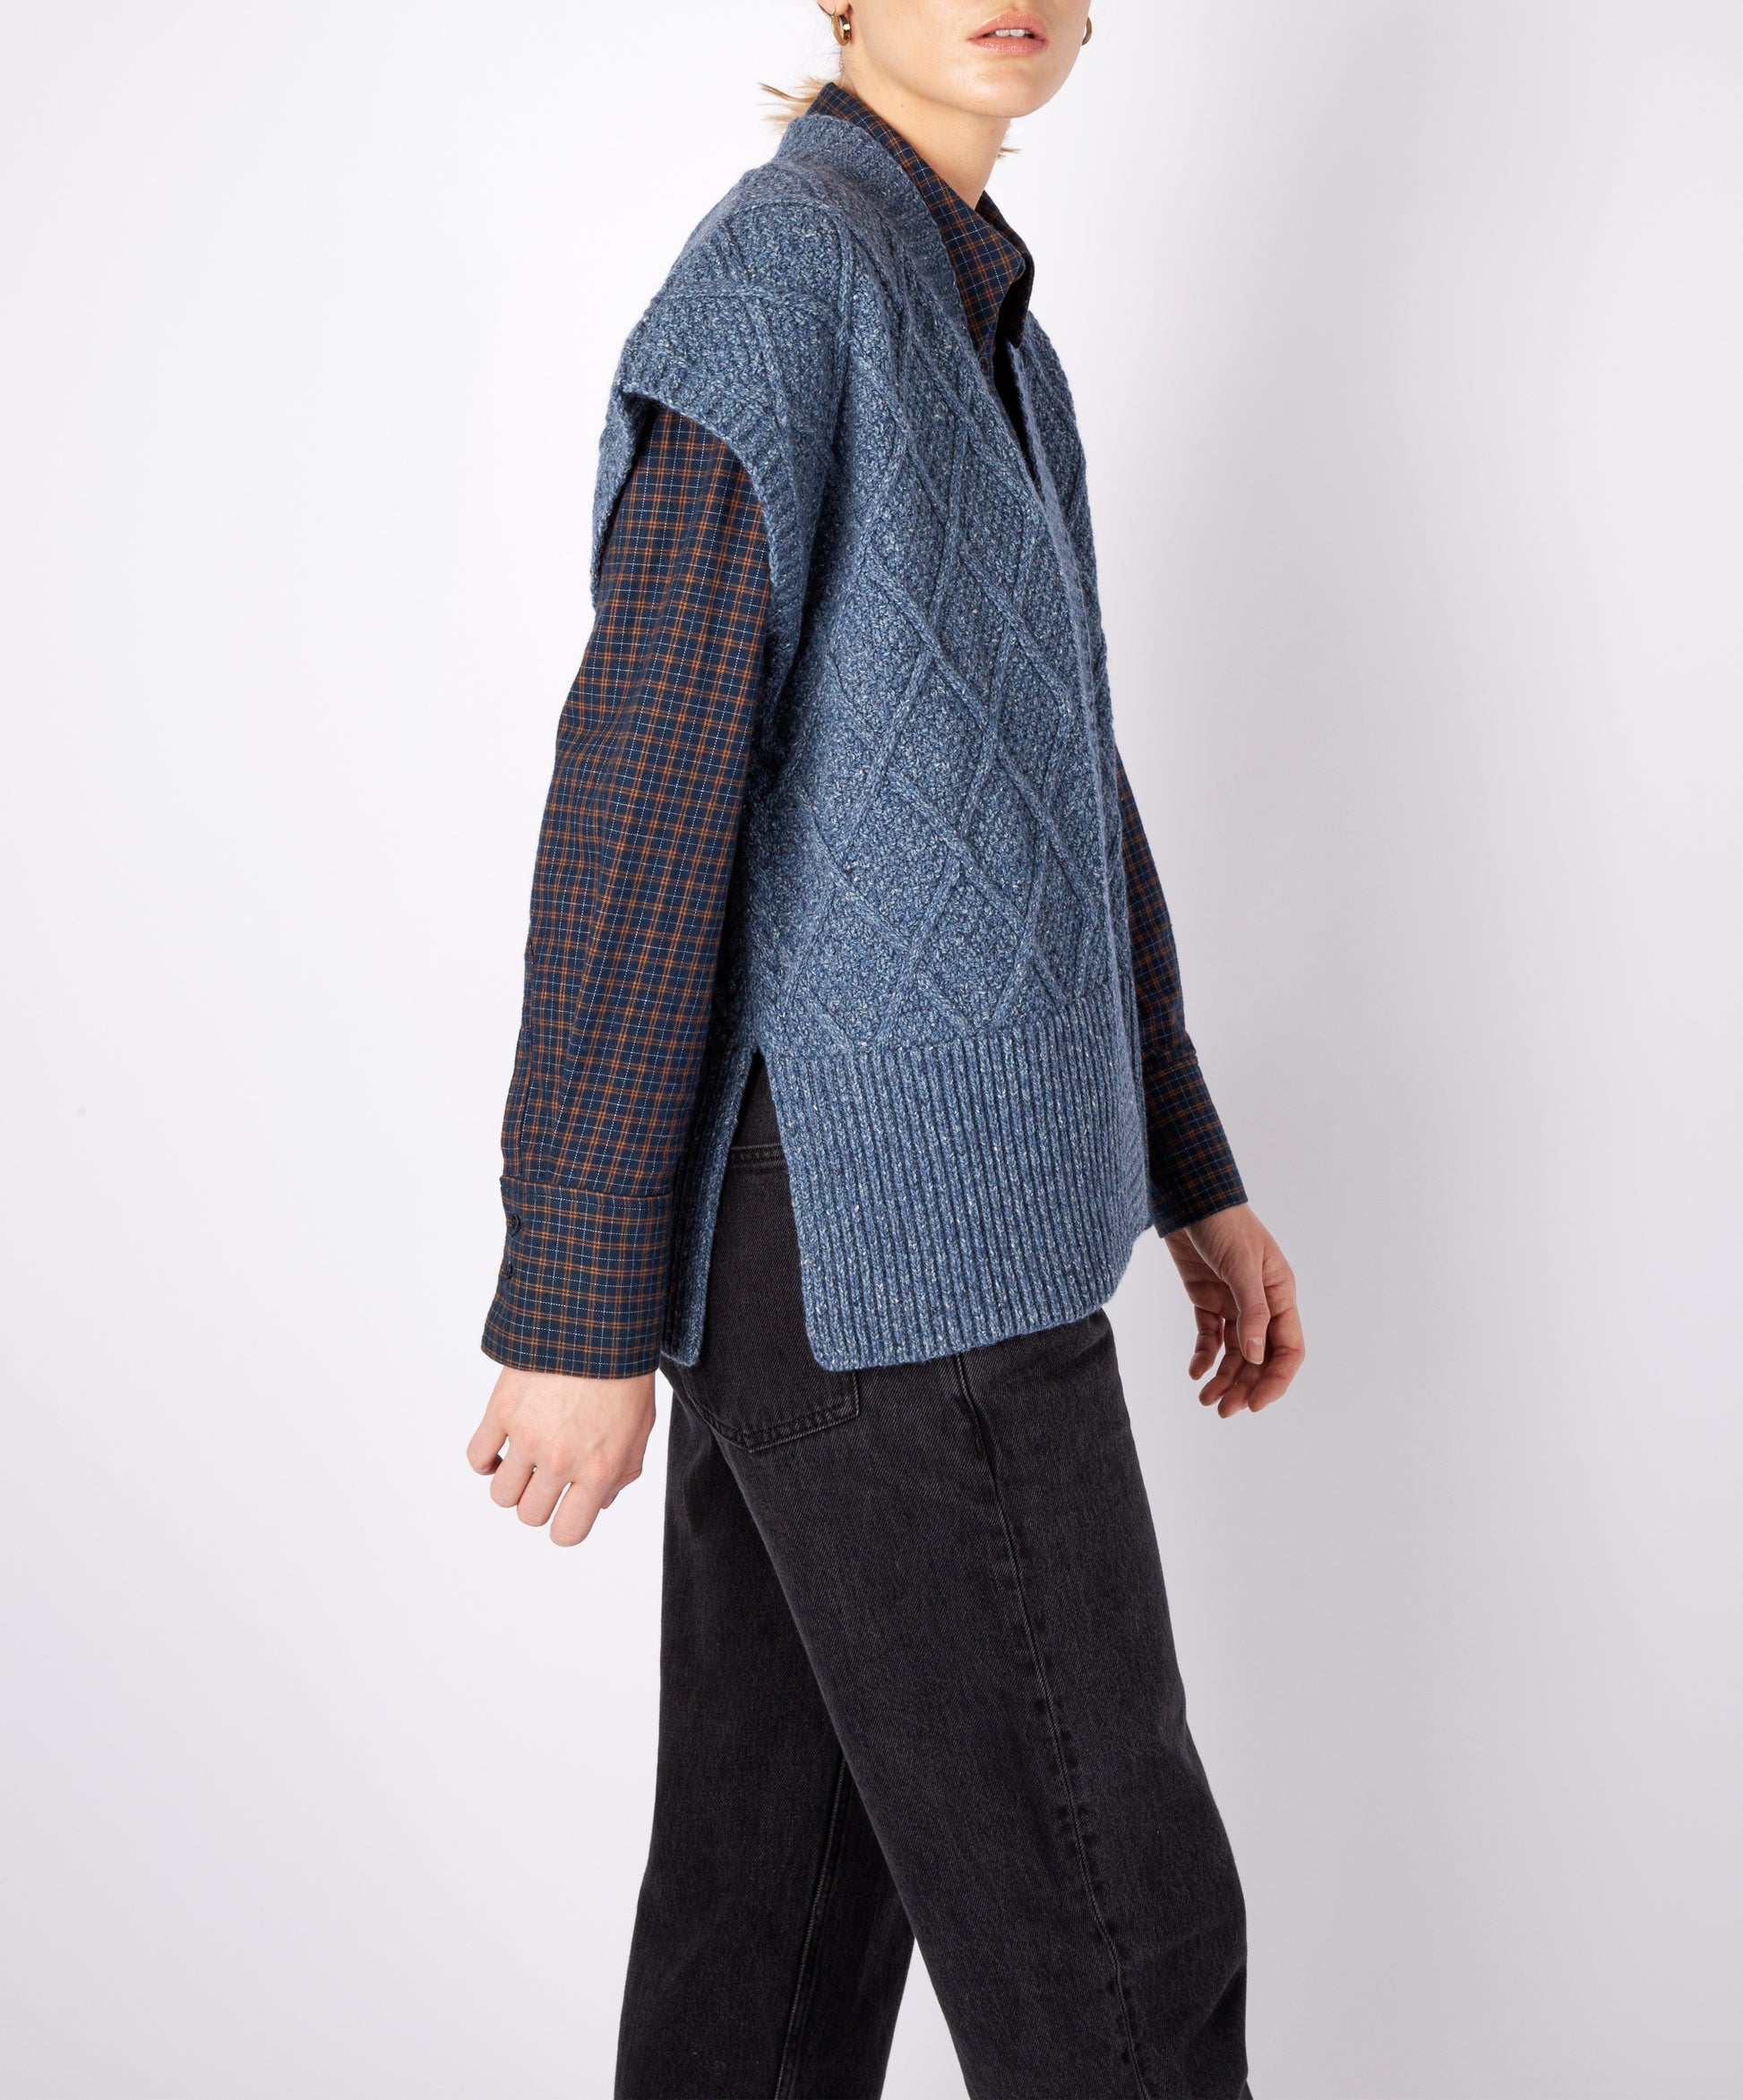 IrelandsEye Knitwear Women's Knitted 'Nettle' Diamond Pattern Vest in Seaspray